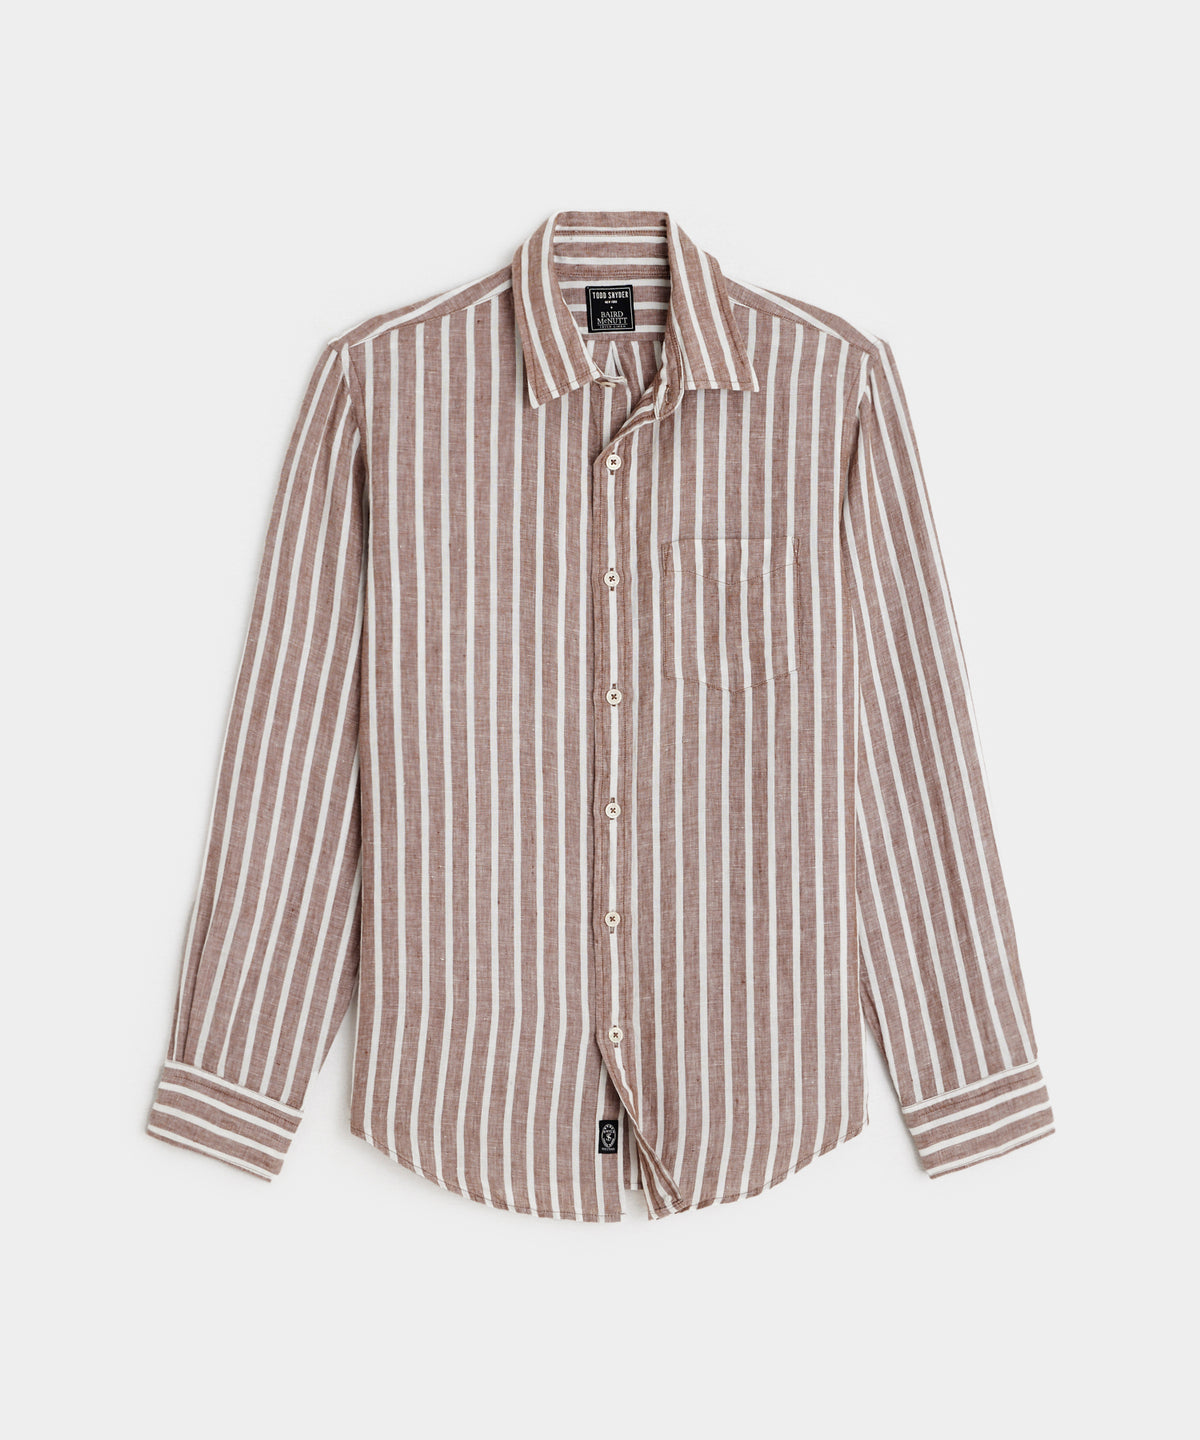 Slim Fit Sea Soft Irish Linen Shirt in Tan Stripe